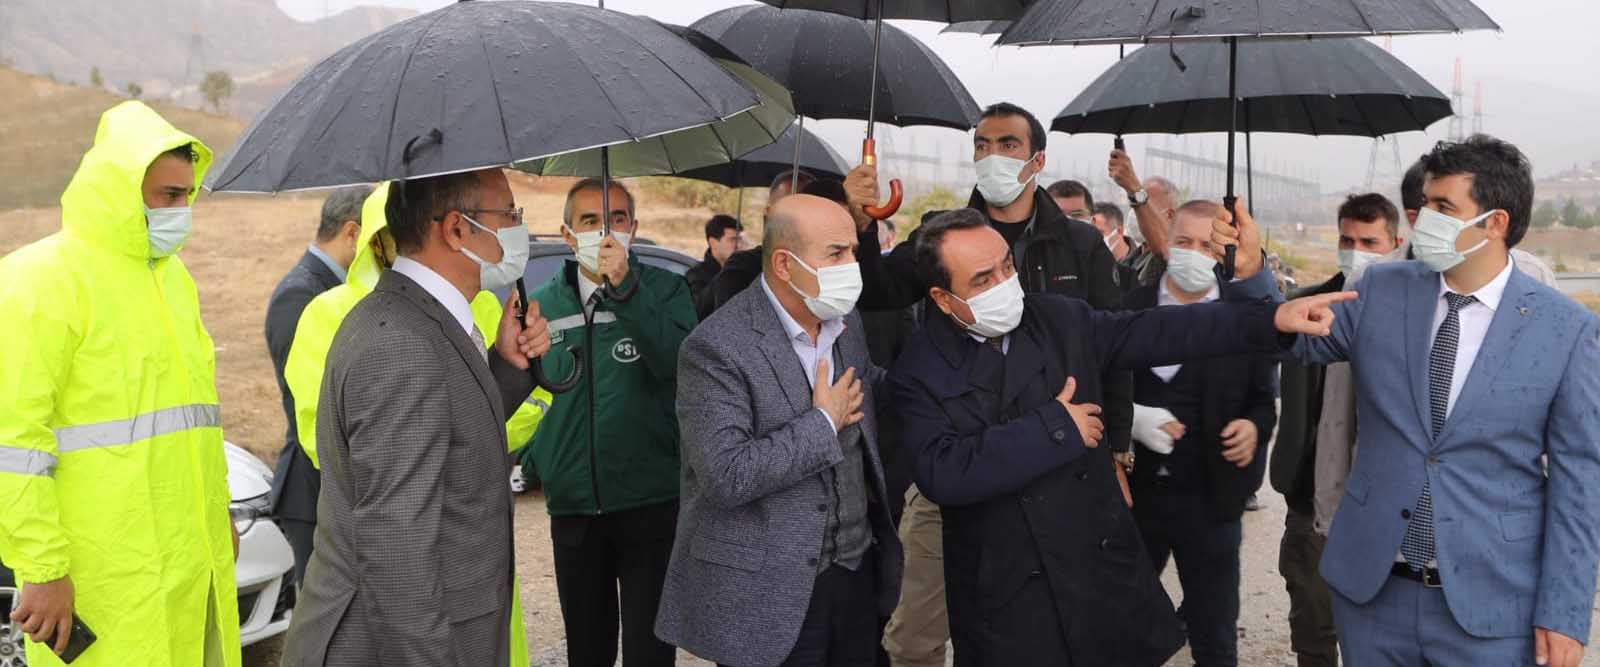 Vali Demirtaş, Cumhurbaşkanı ziyareti öncesi Dargeçit’te incelemelerde bulundu